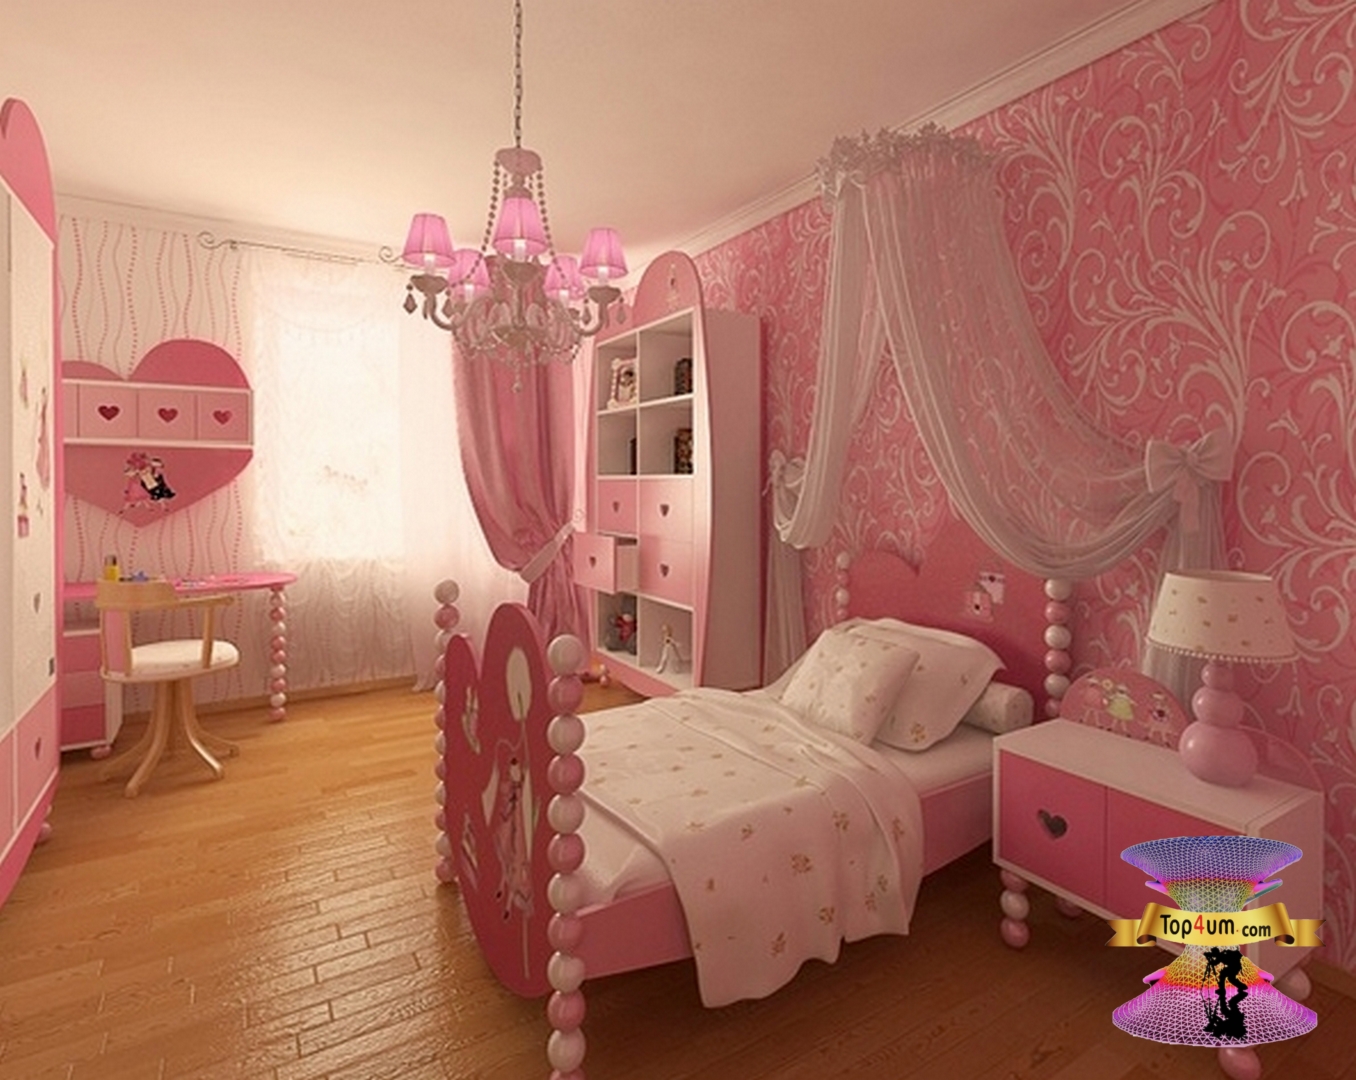 3 комнатка. Детские спальни для девочек. Детские комнаты для девочек. Красивая детская комната девочке. Интерьер детской комнаты девочке.